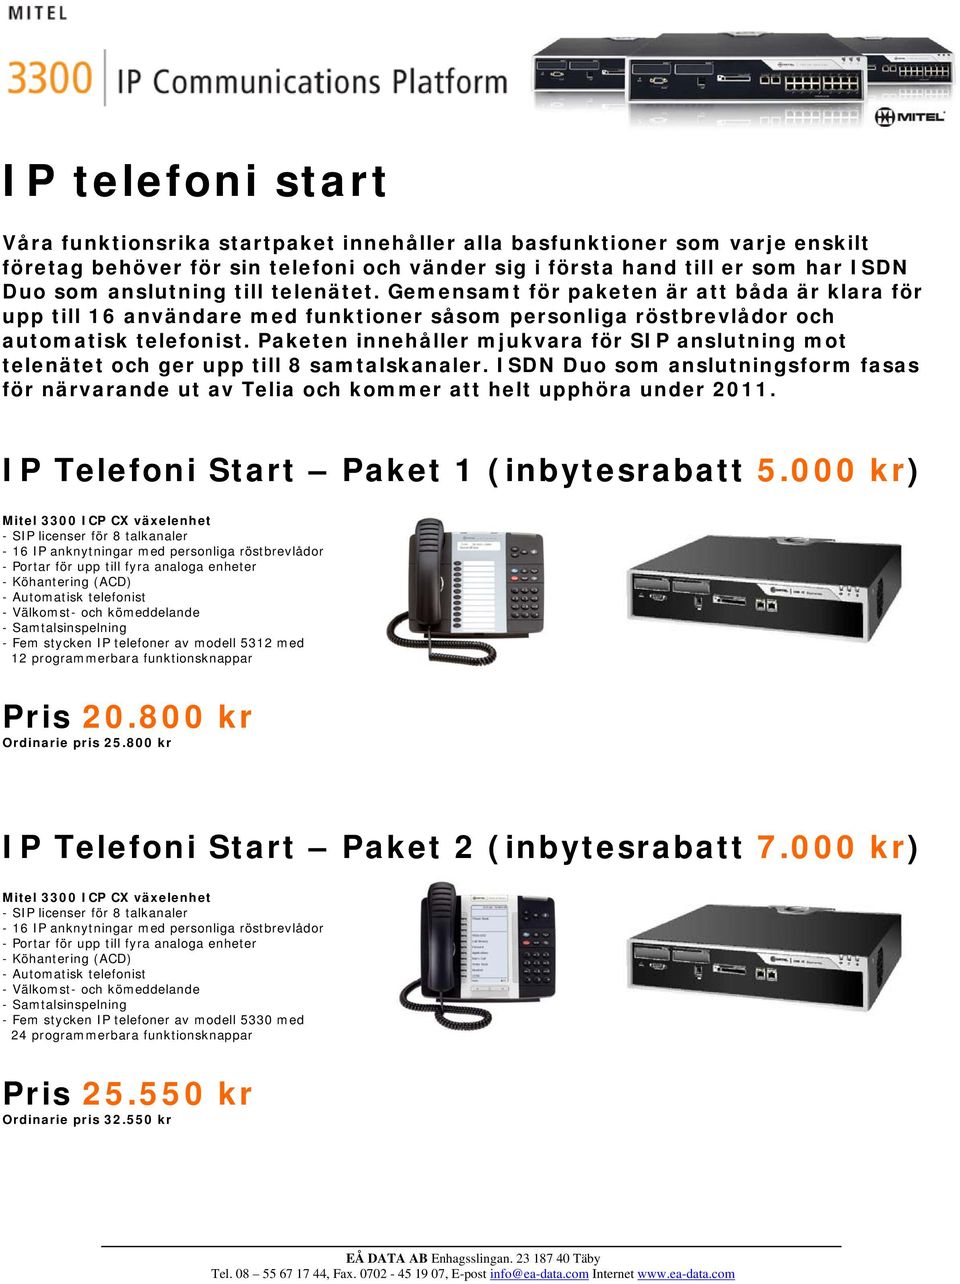 Paketen innehåller mjukvara för SIP anslutning mot telenätet och ger upp till 8 samtalskanaler. ISDN Duo som anslutningsform fasas för närvarande ut av Telia och kommer att helt upphöra under 2011.